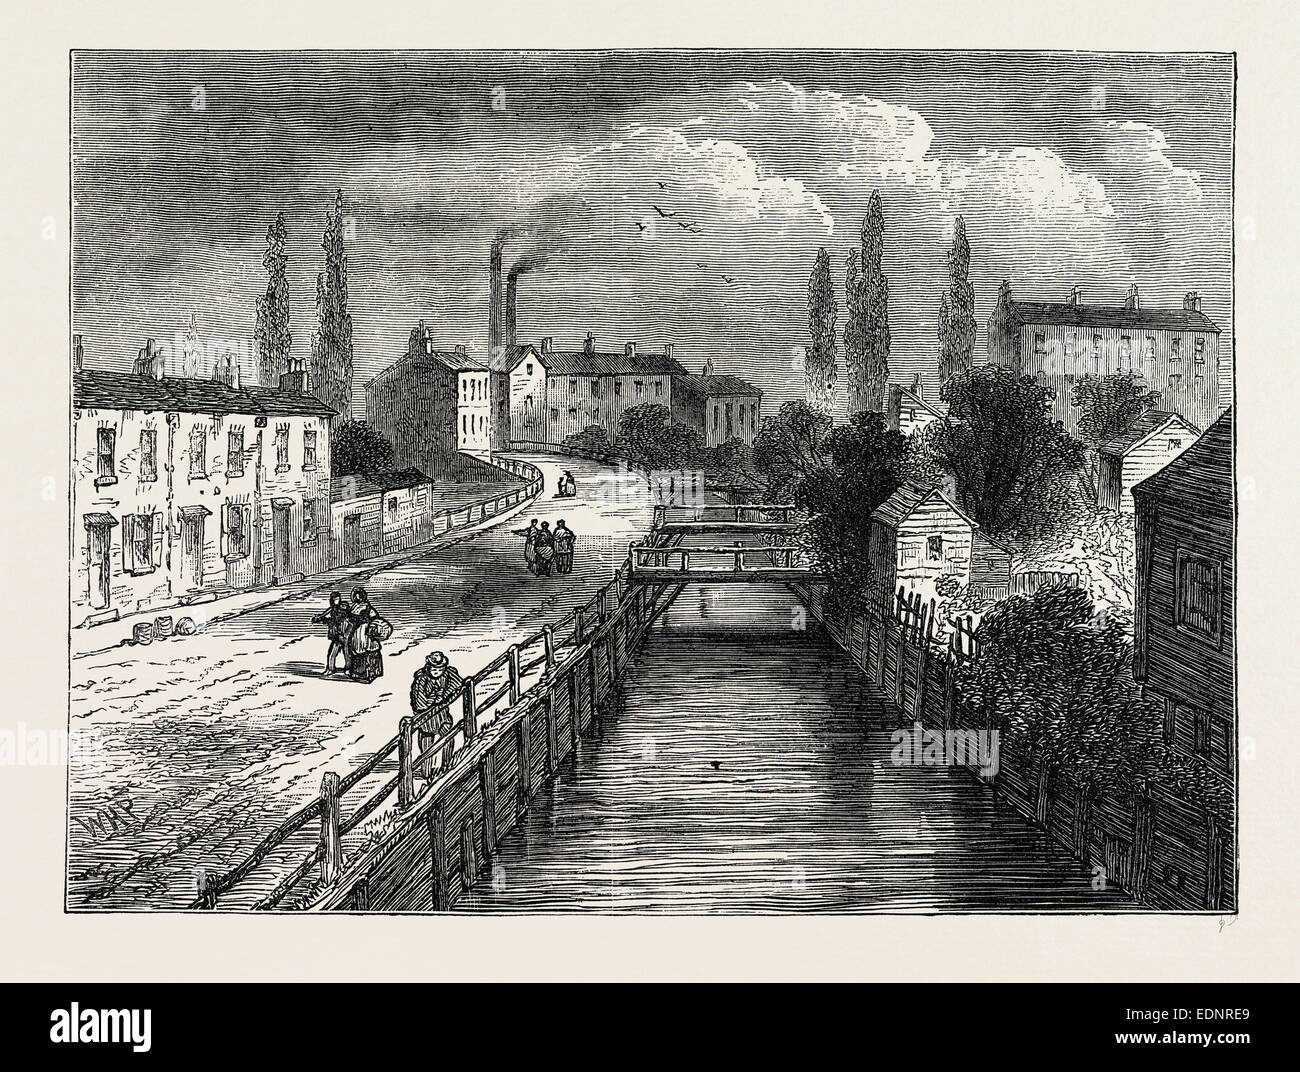 BATTLE BRIDGE EN 1810. Londres, Royaume-Uni, la gravure du xixe siècle Banque D'Images